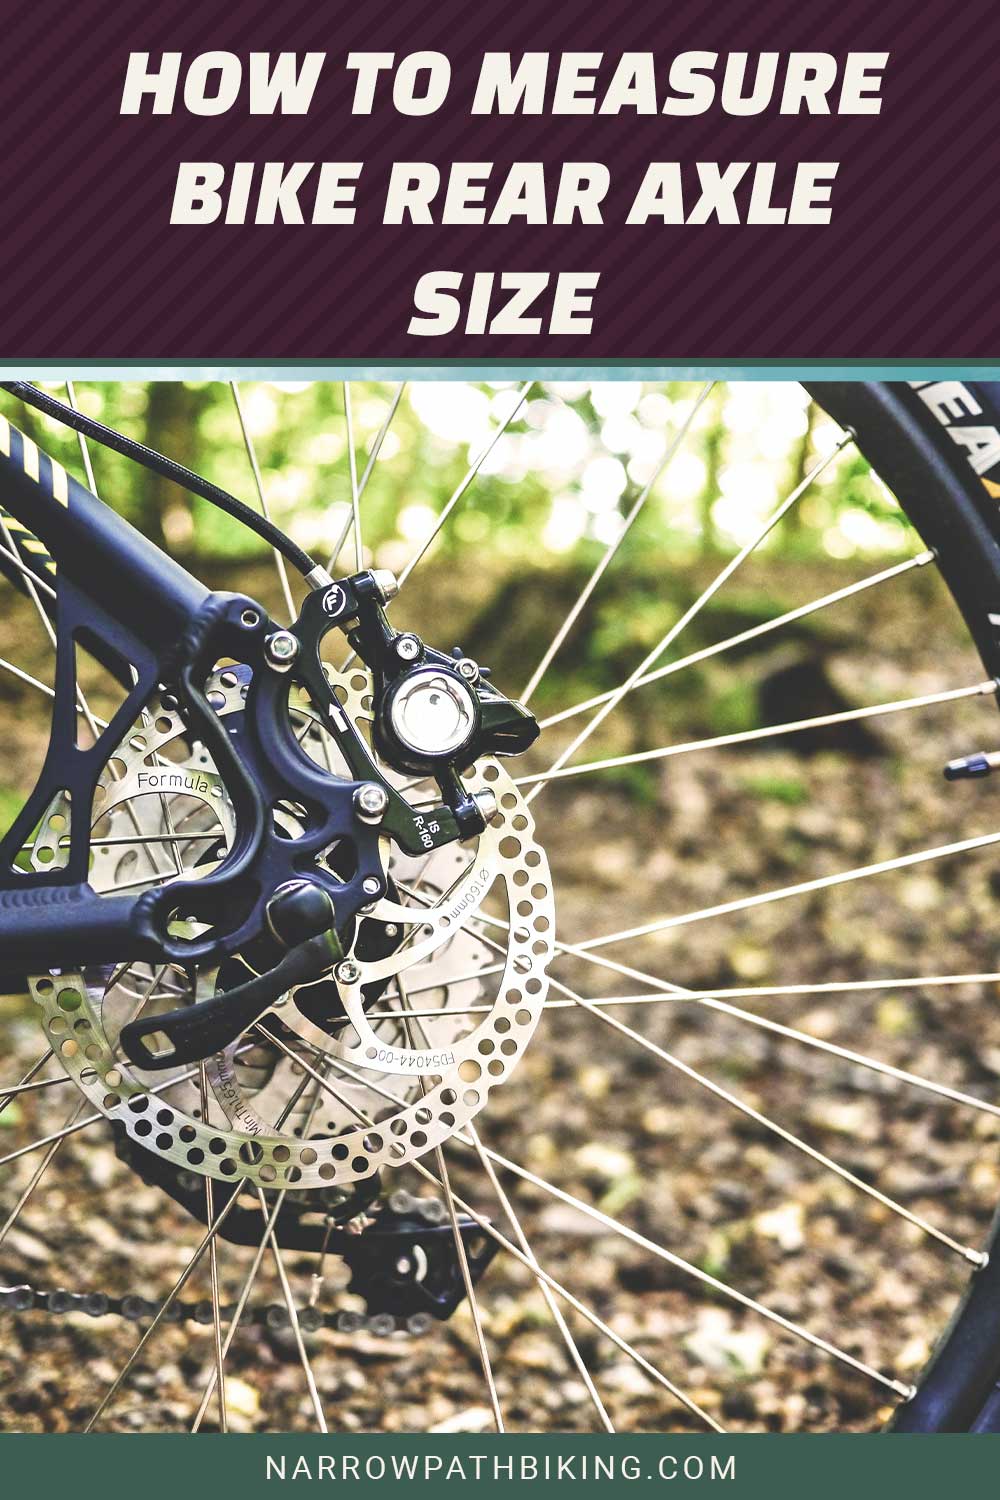 Bike crank of rear wheel - How to Measure Bike Rear Axle Size?